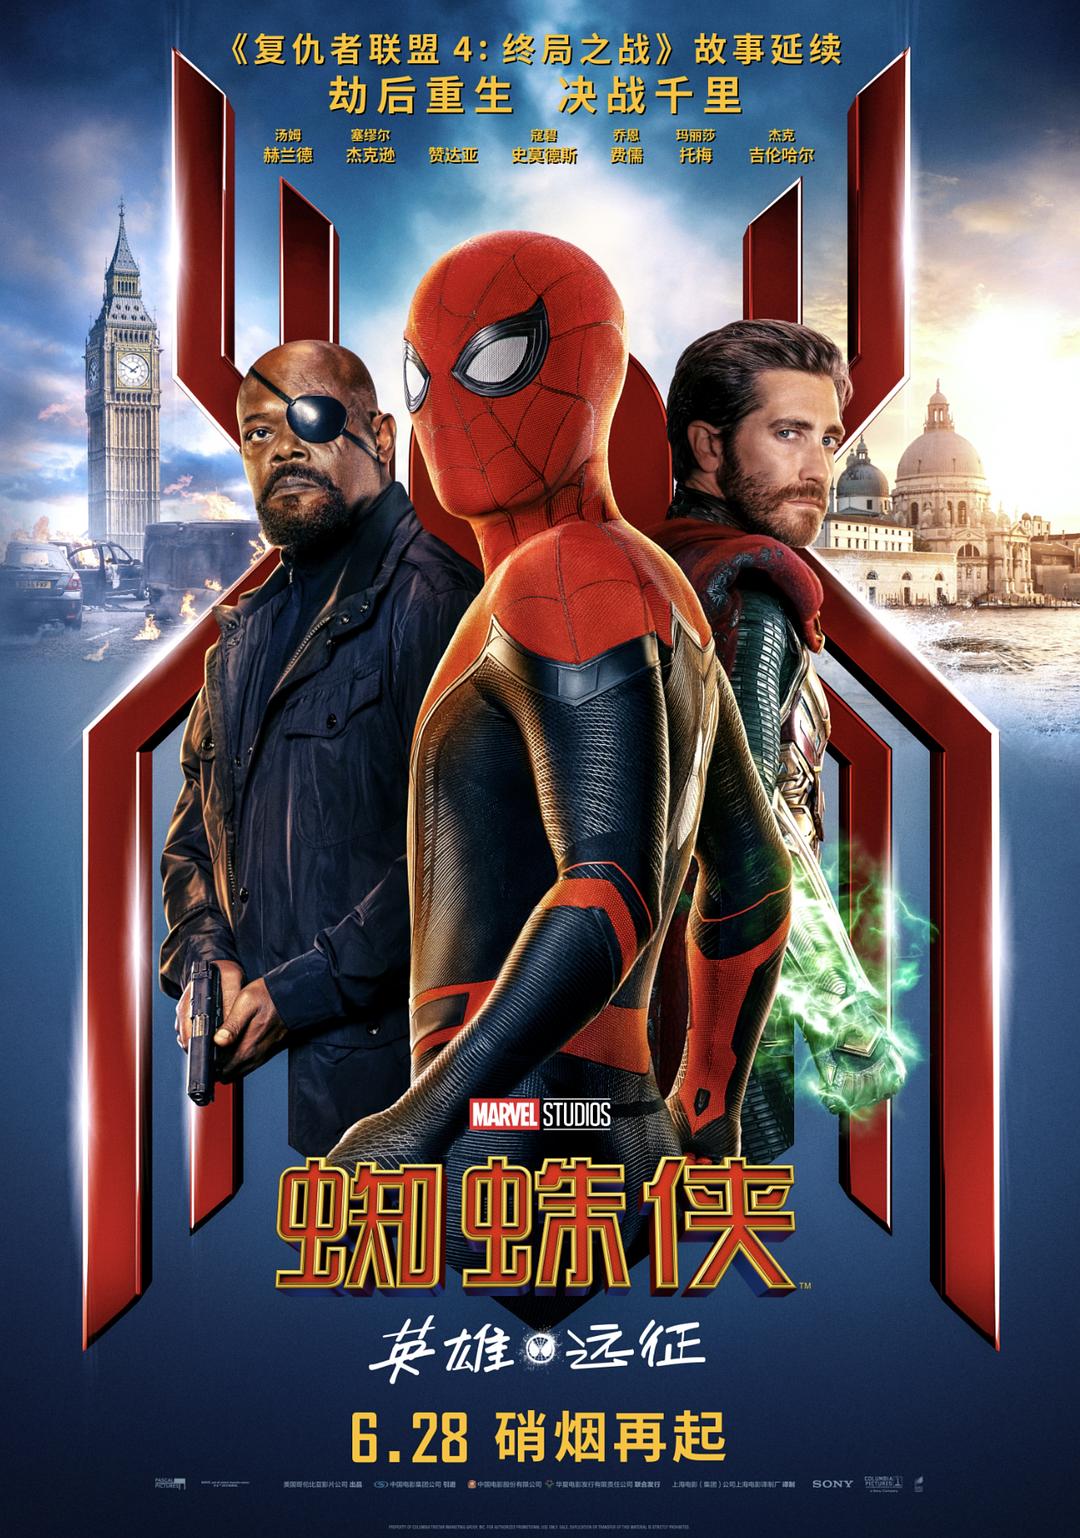 蜘蛛侠:豪杰远征/新蜘蛛侠2 Spider-Man.Far.from.Home.2019.1080p.BluRay.x264.DTS-HD.MA.7.1-FGT 10.84GB-1.png